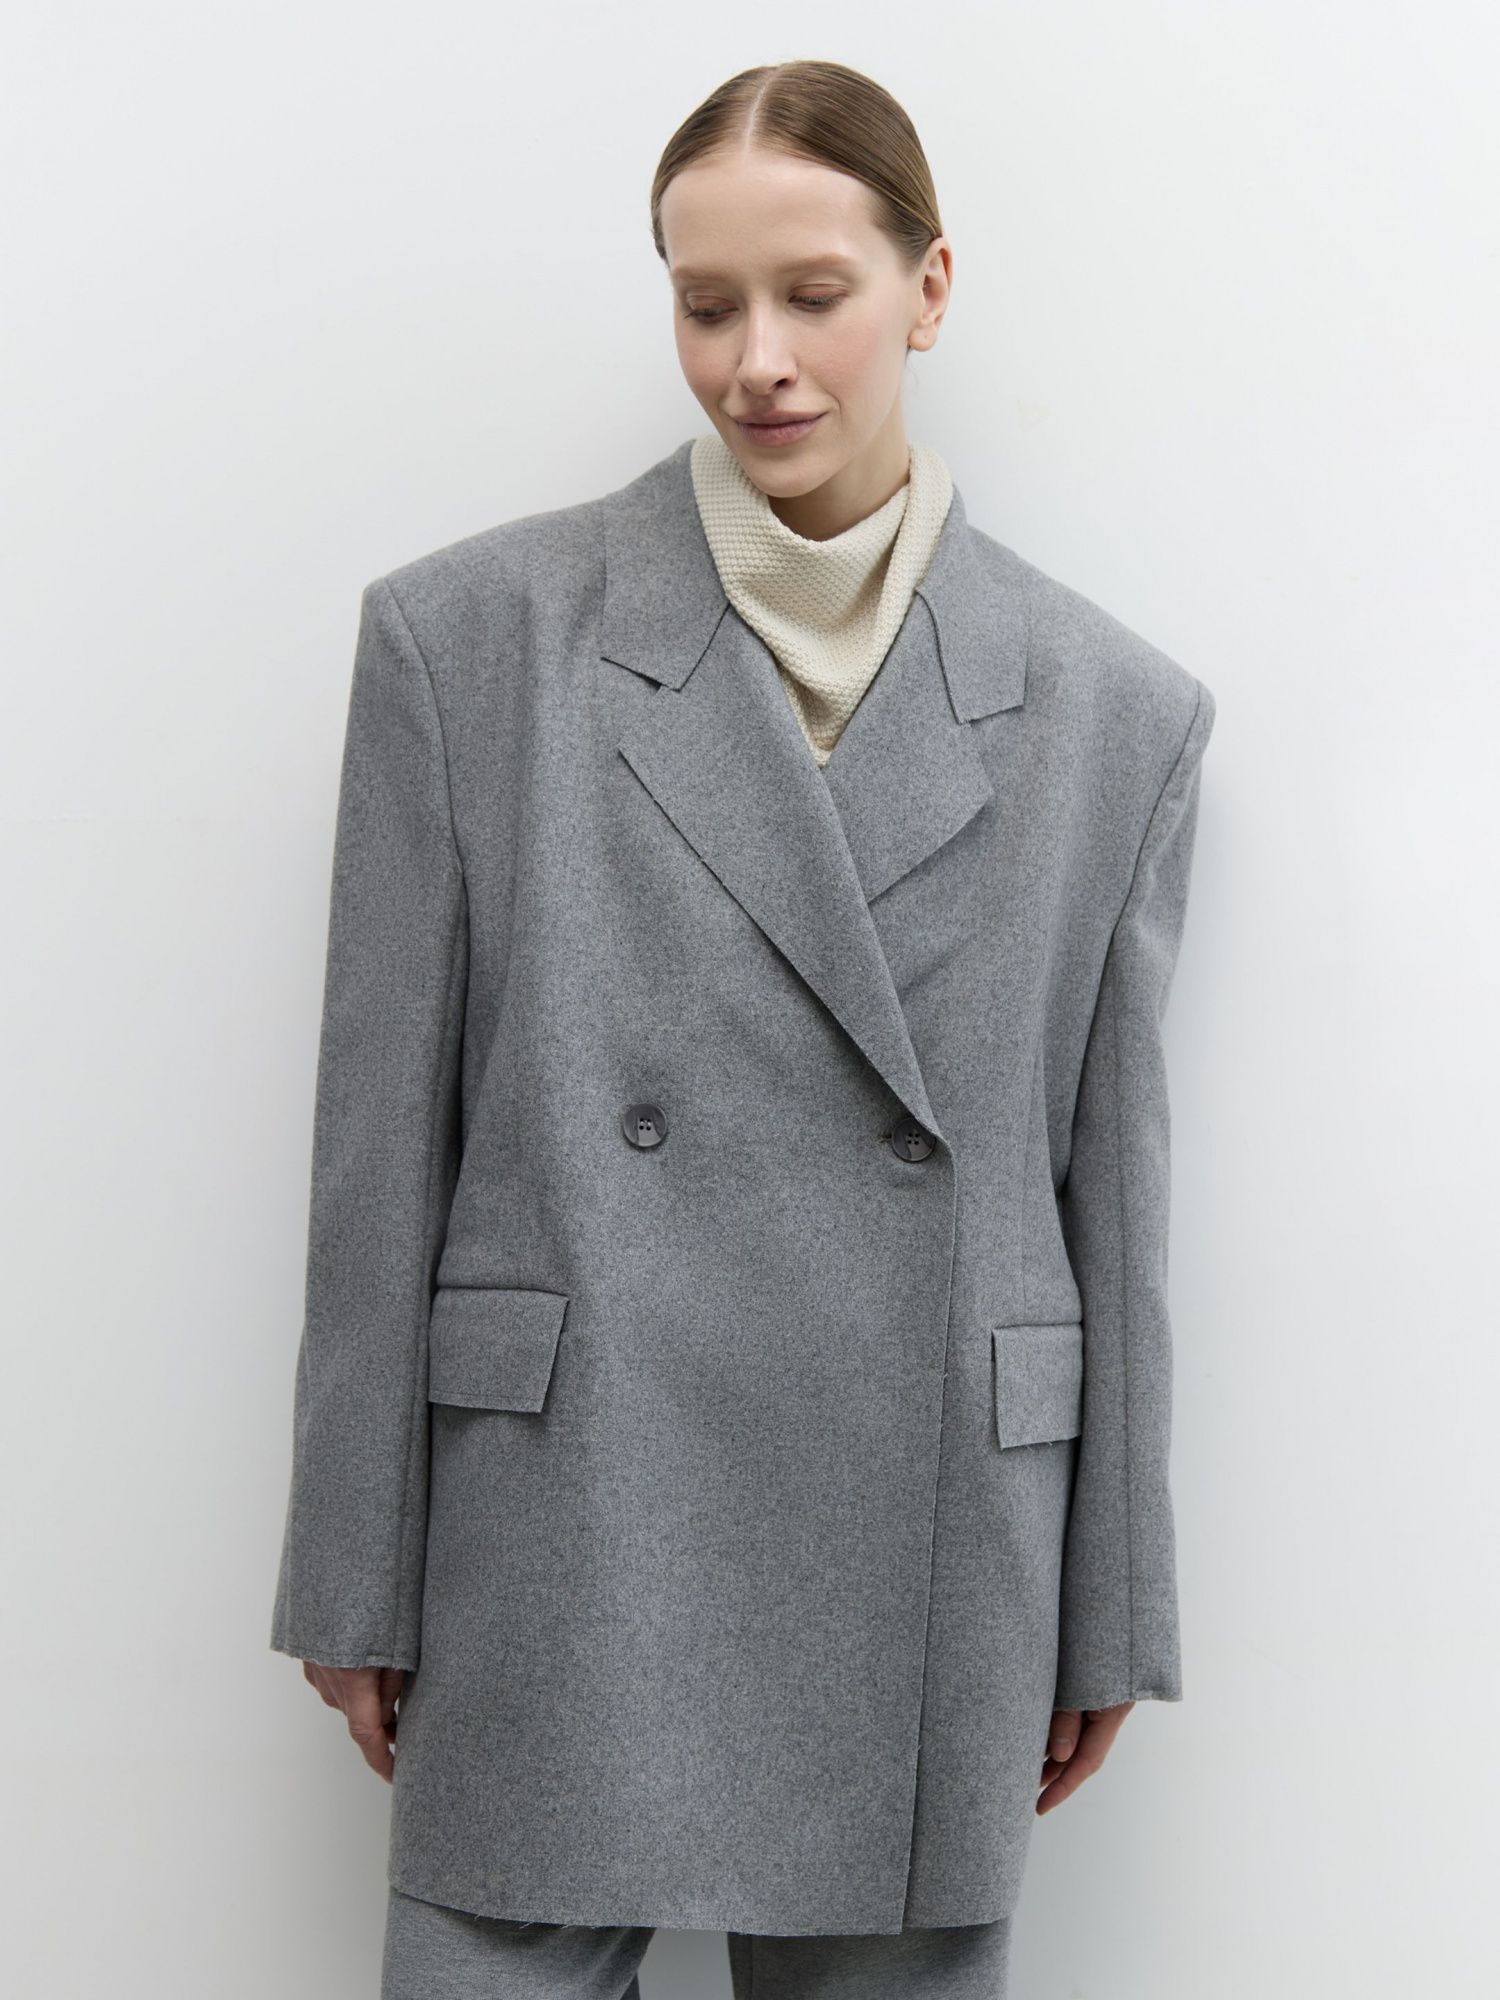 Жакет-пальто из итальянской шерсти серый - фото 2. Around